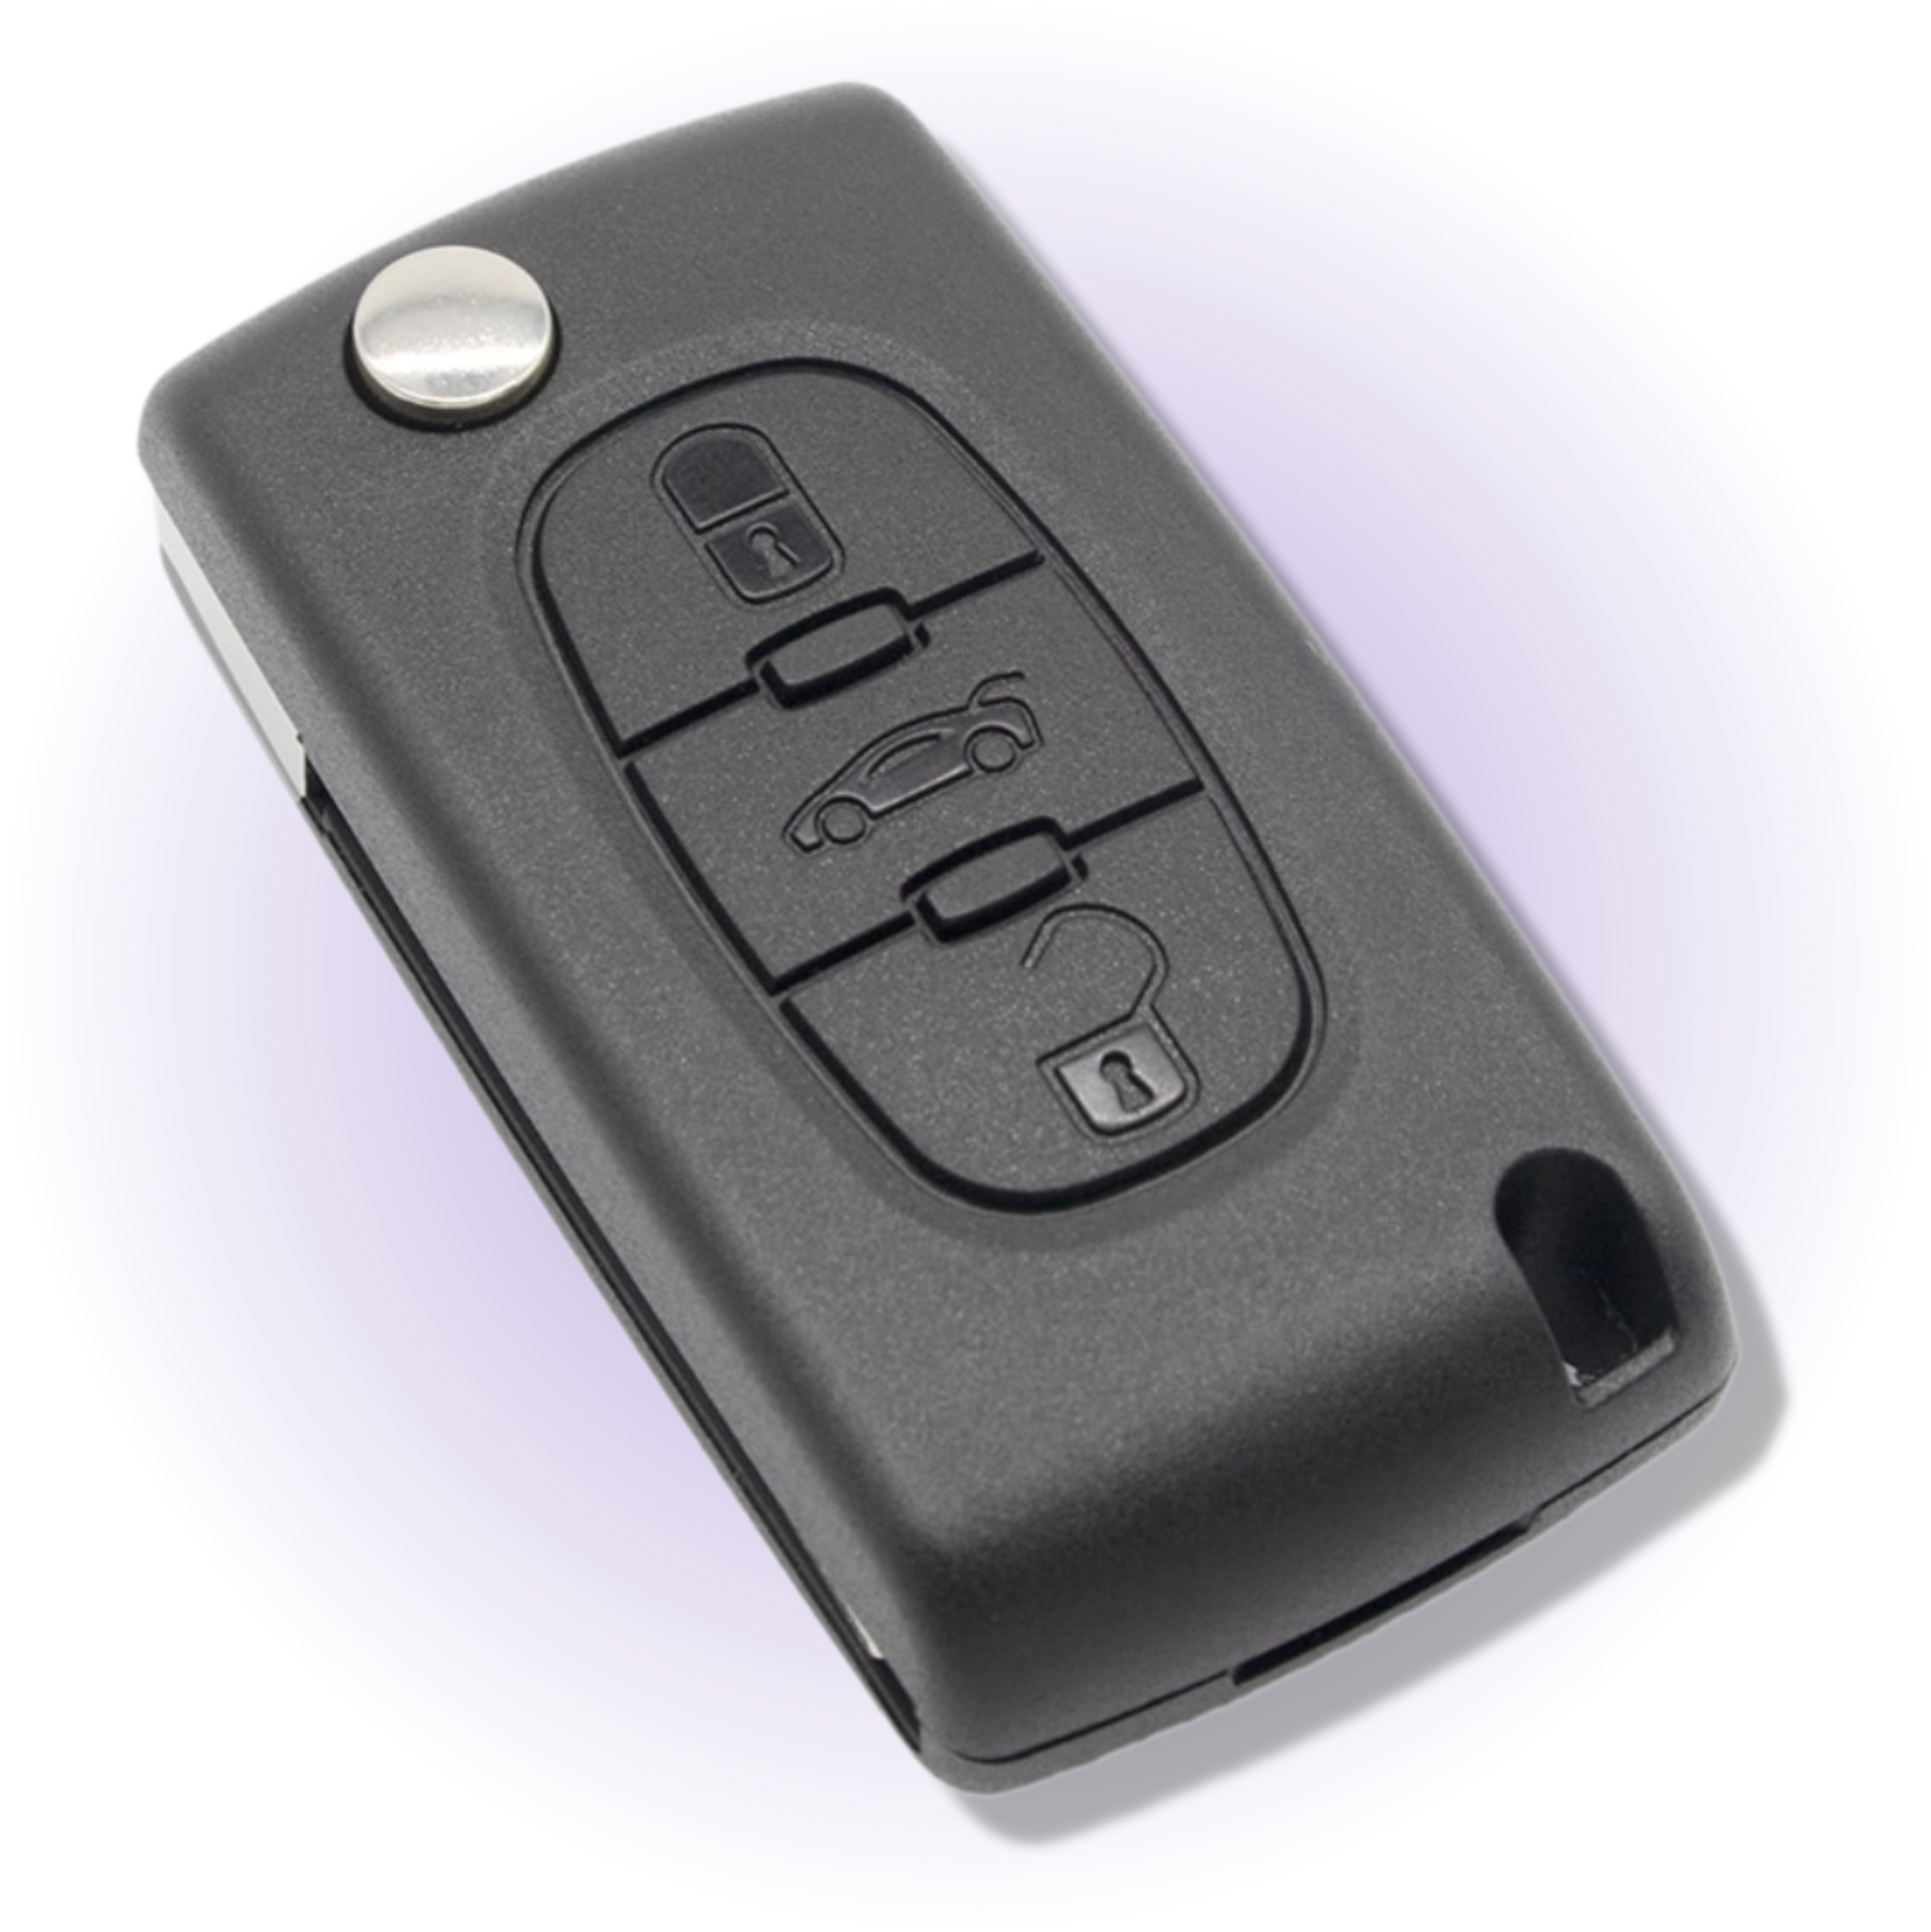 Корпус ключа зажигания для Пежо корпус ключа для Peugeot 3 кнопки батарейка на корпусе лезвие HU83